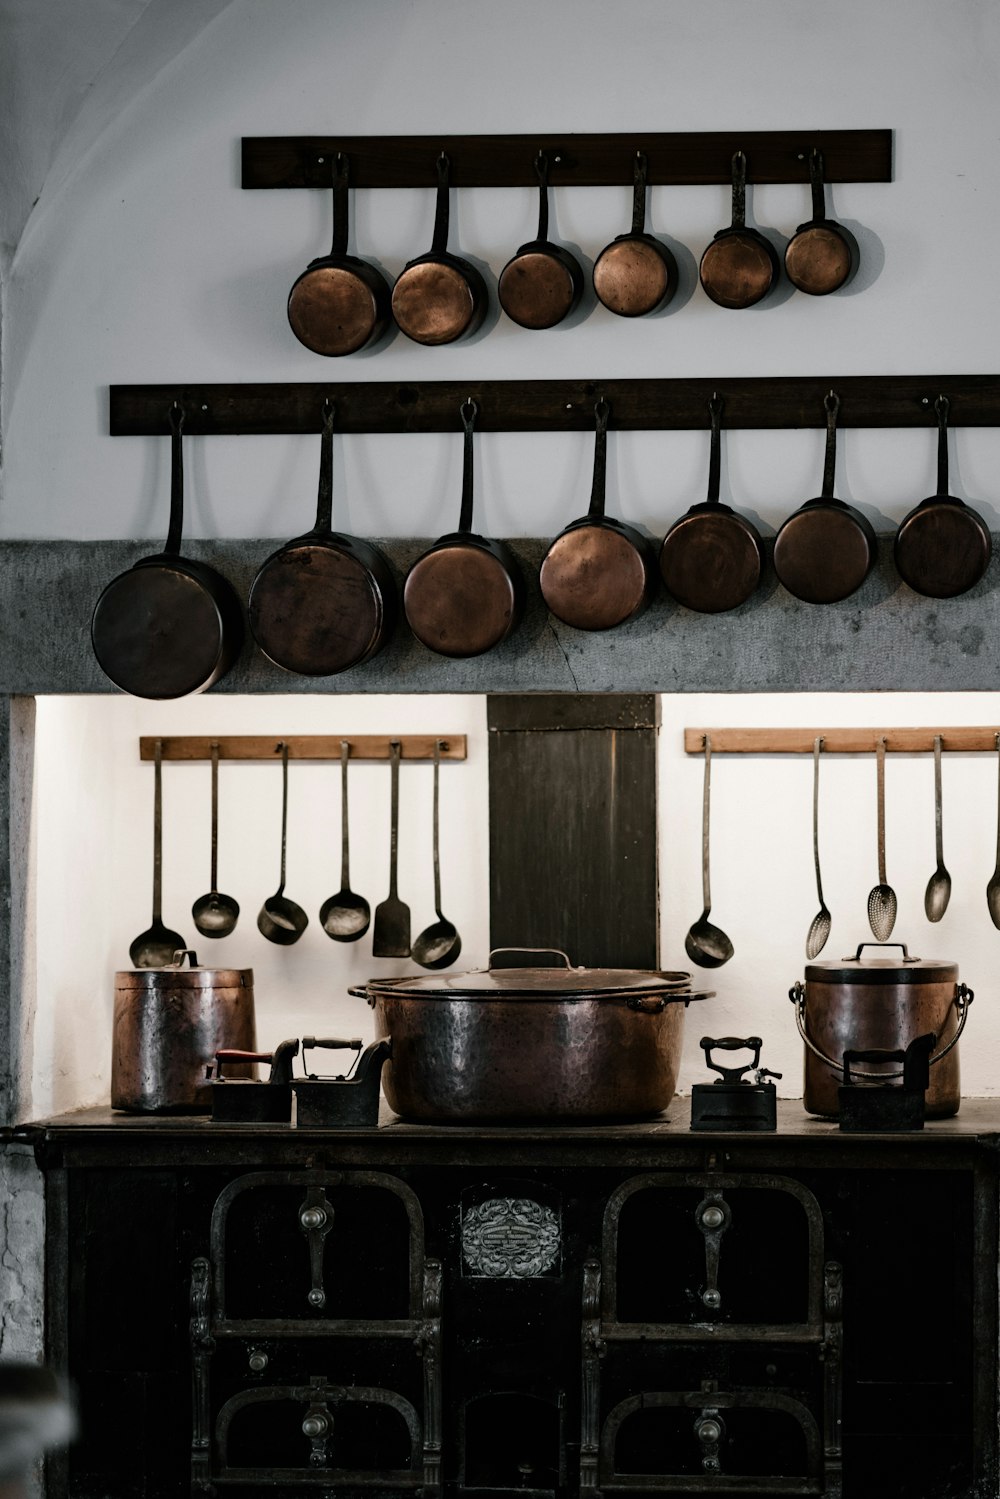 Casseroles et poêles assorties suspendues au-dessus de la cuisinière en fonte noire